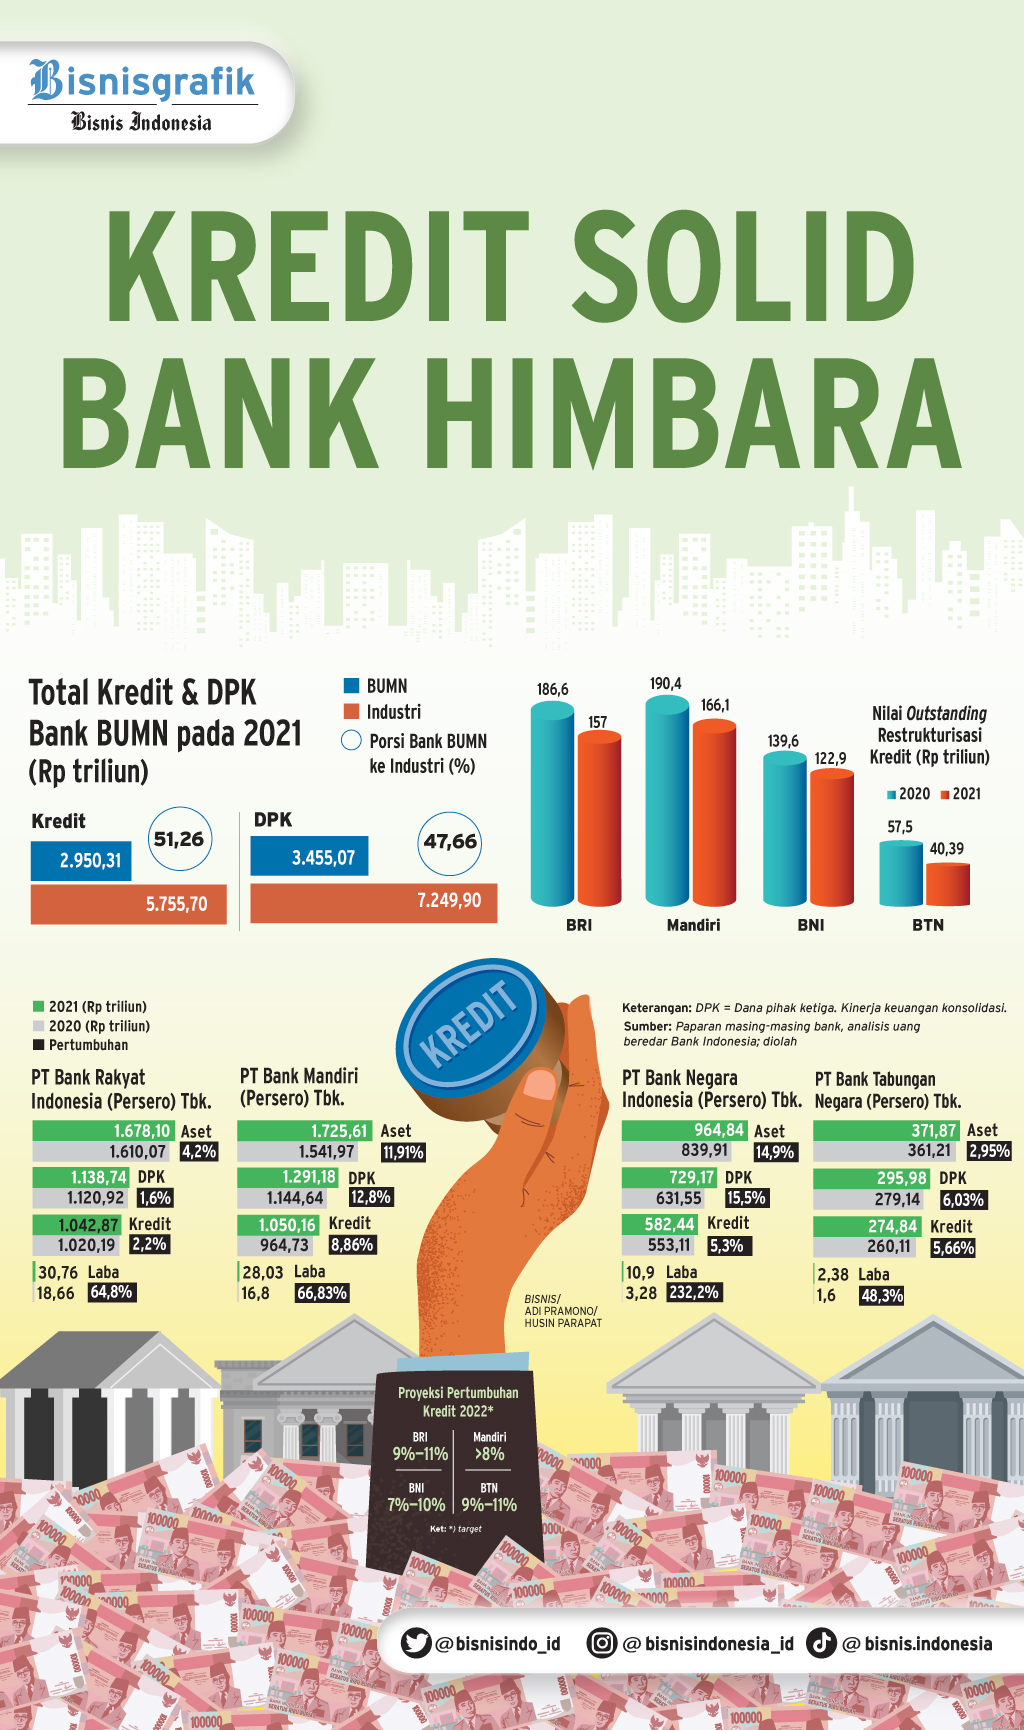 BISNIS PERBANKAN : Kredit Solid Bank Himbara